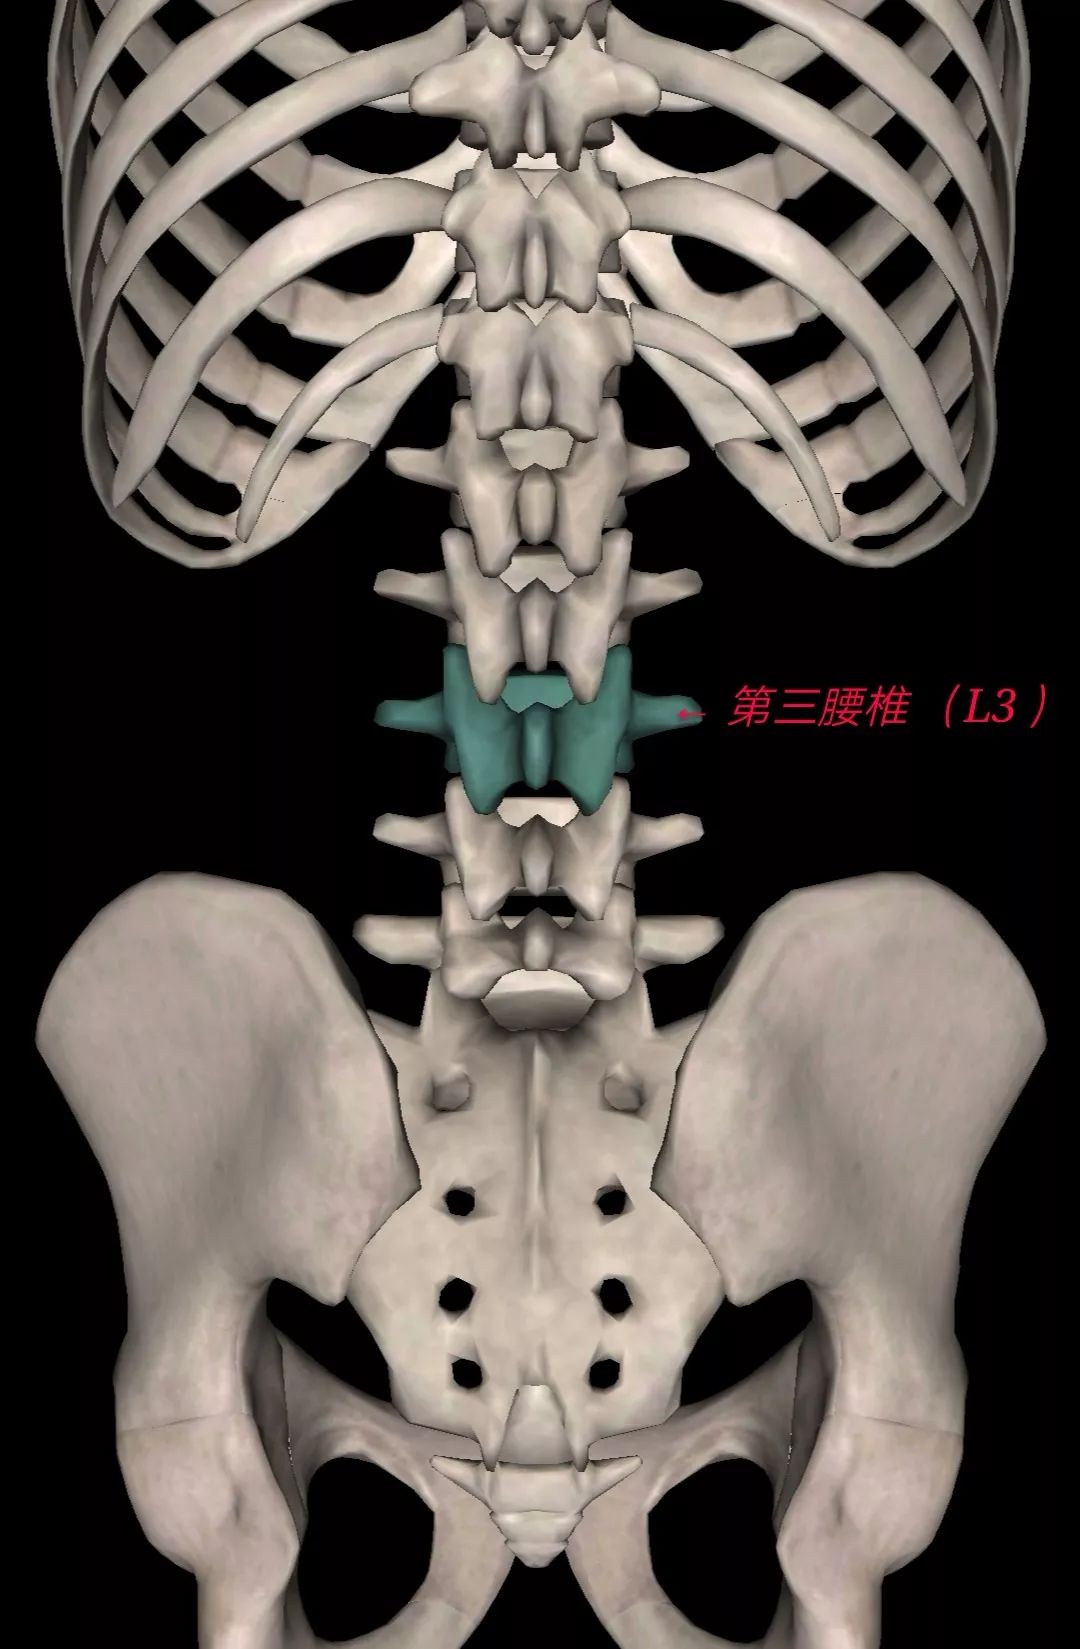 第三腰椎(l3)—— 第五腰椎(l5) 轻微膨出